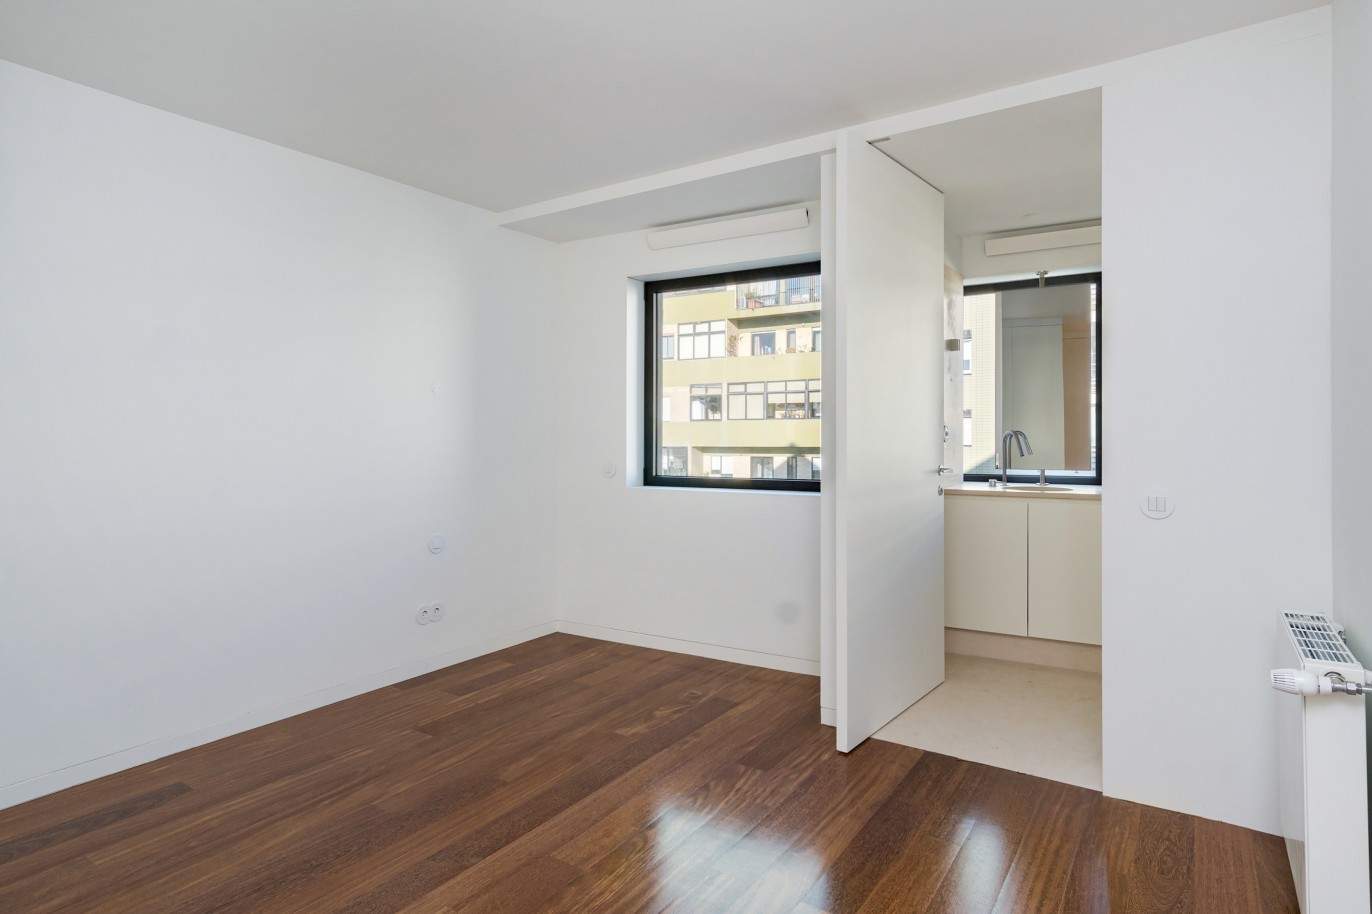 Verkauf: Neue Wohnung mit Balkon in 2. Meereslinie, Foz do Douro, Porto, Portugal_211881